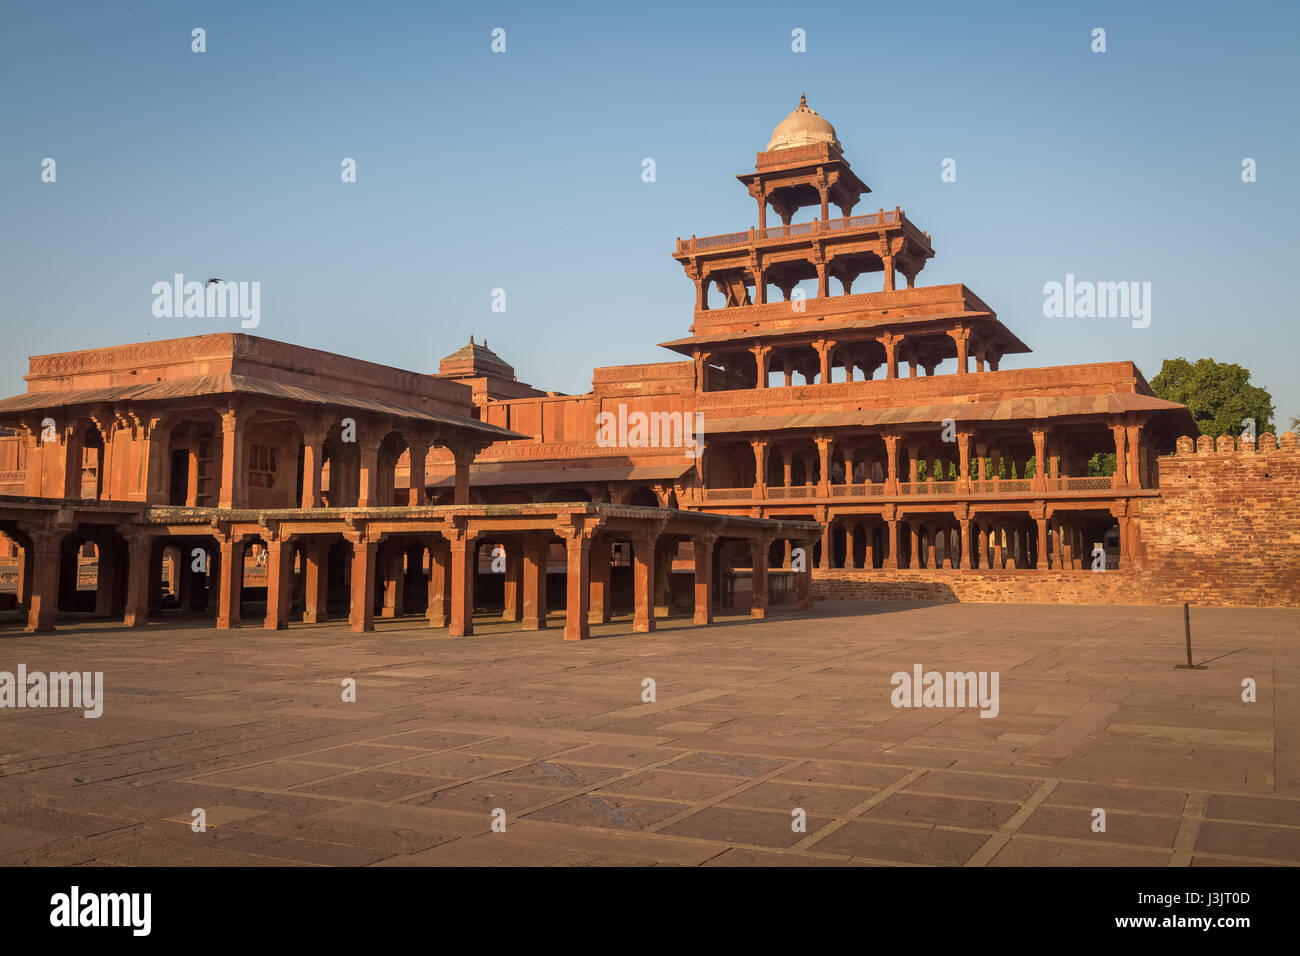 Historische indische Architektur Gebäude panch Mahal von großmogul Akbar in Fatehpur Sikri Agra, Indien. Stockfoto